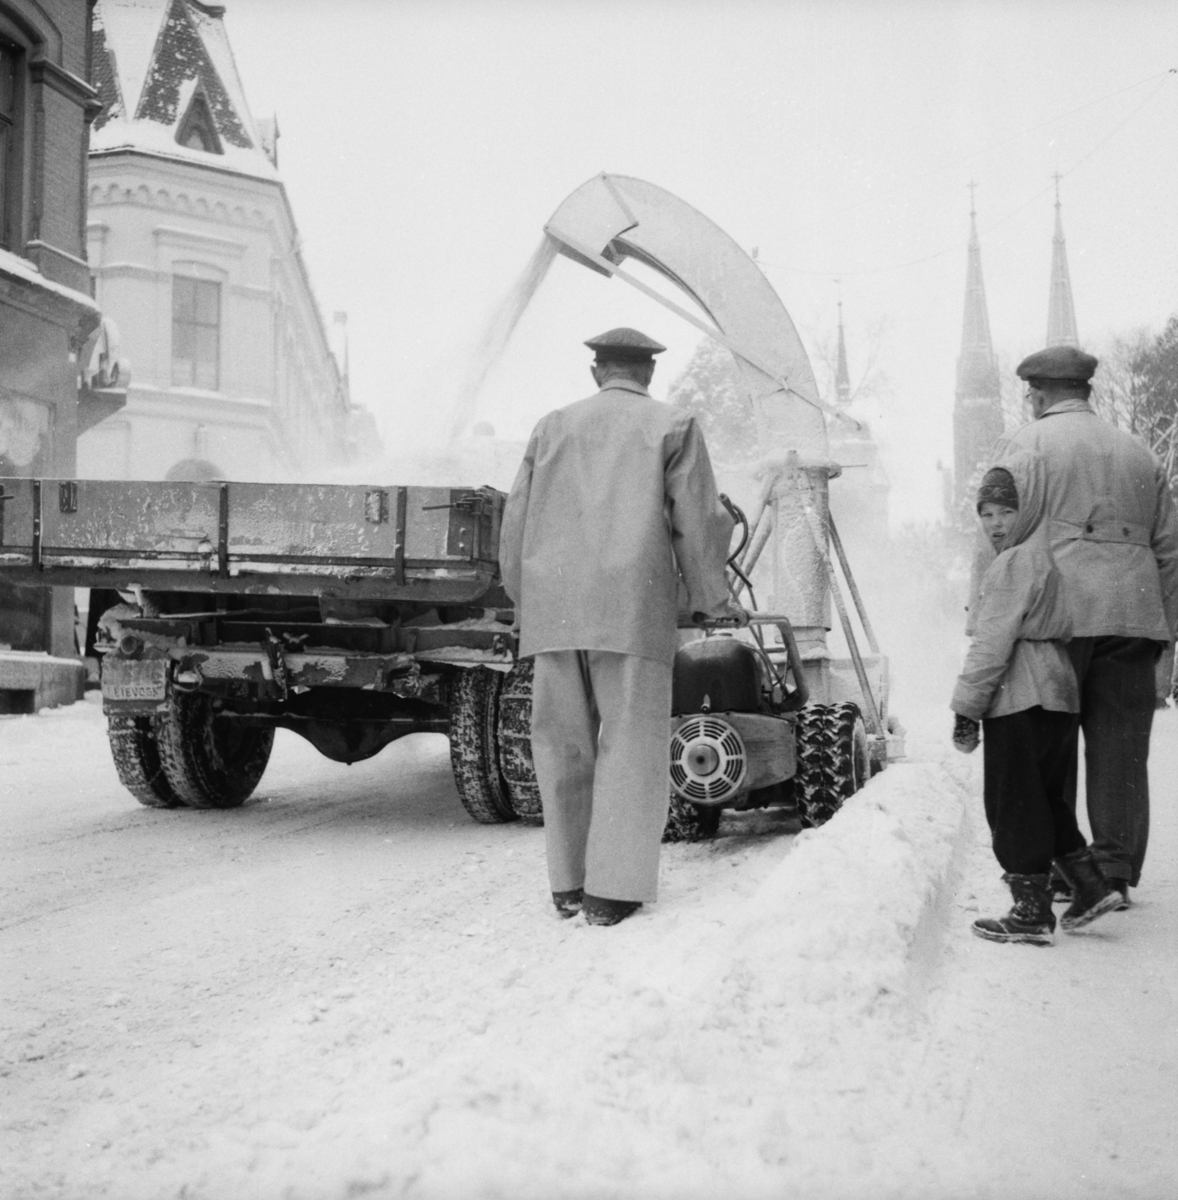 Vardens arkiv. "Snøfreser i aksjon i Skiens gater"  18.02.1954